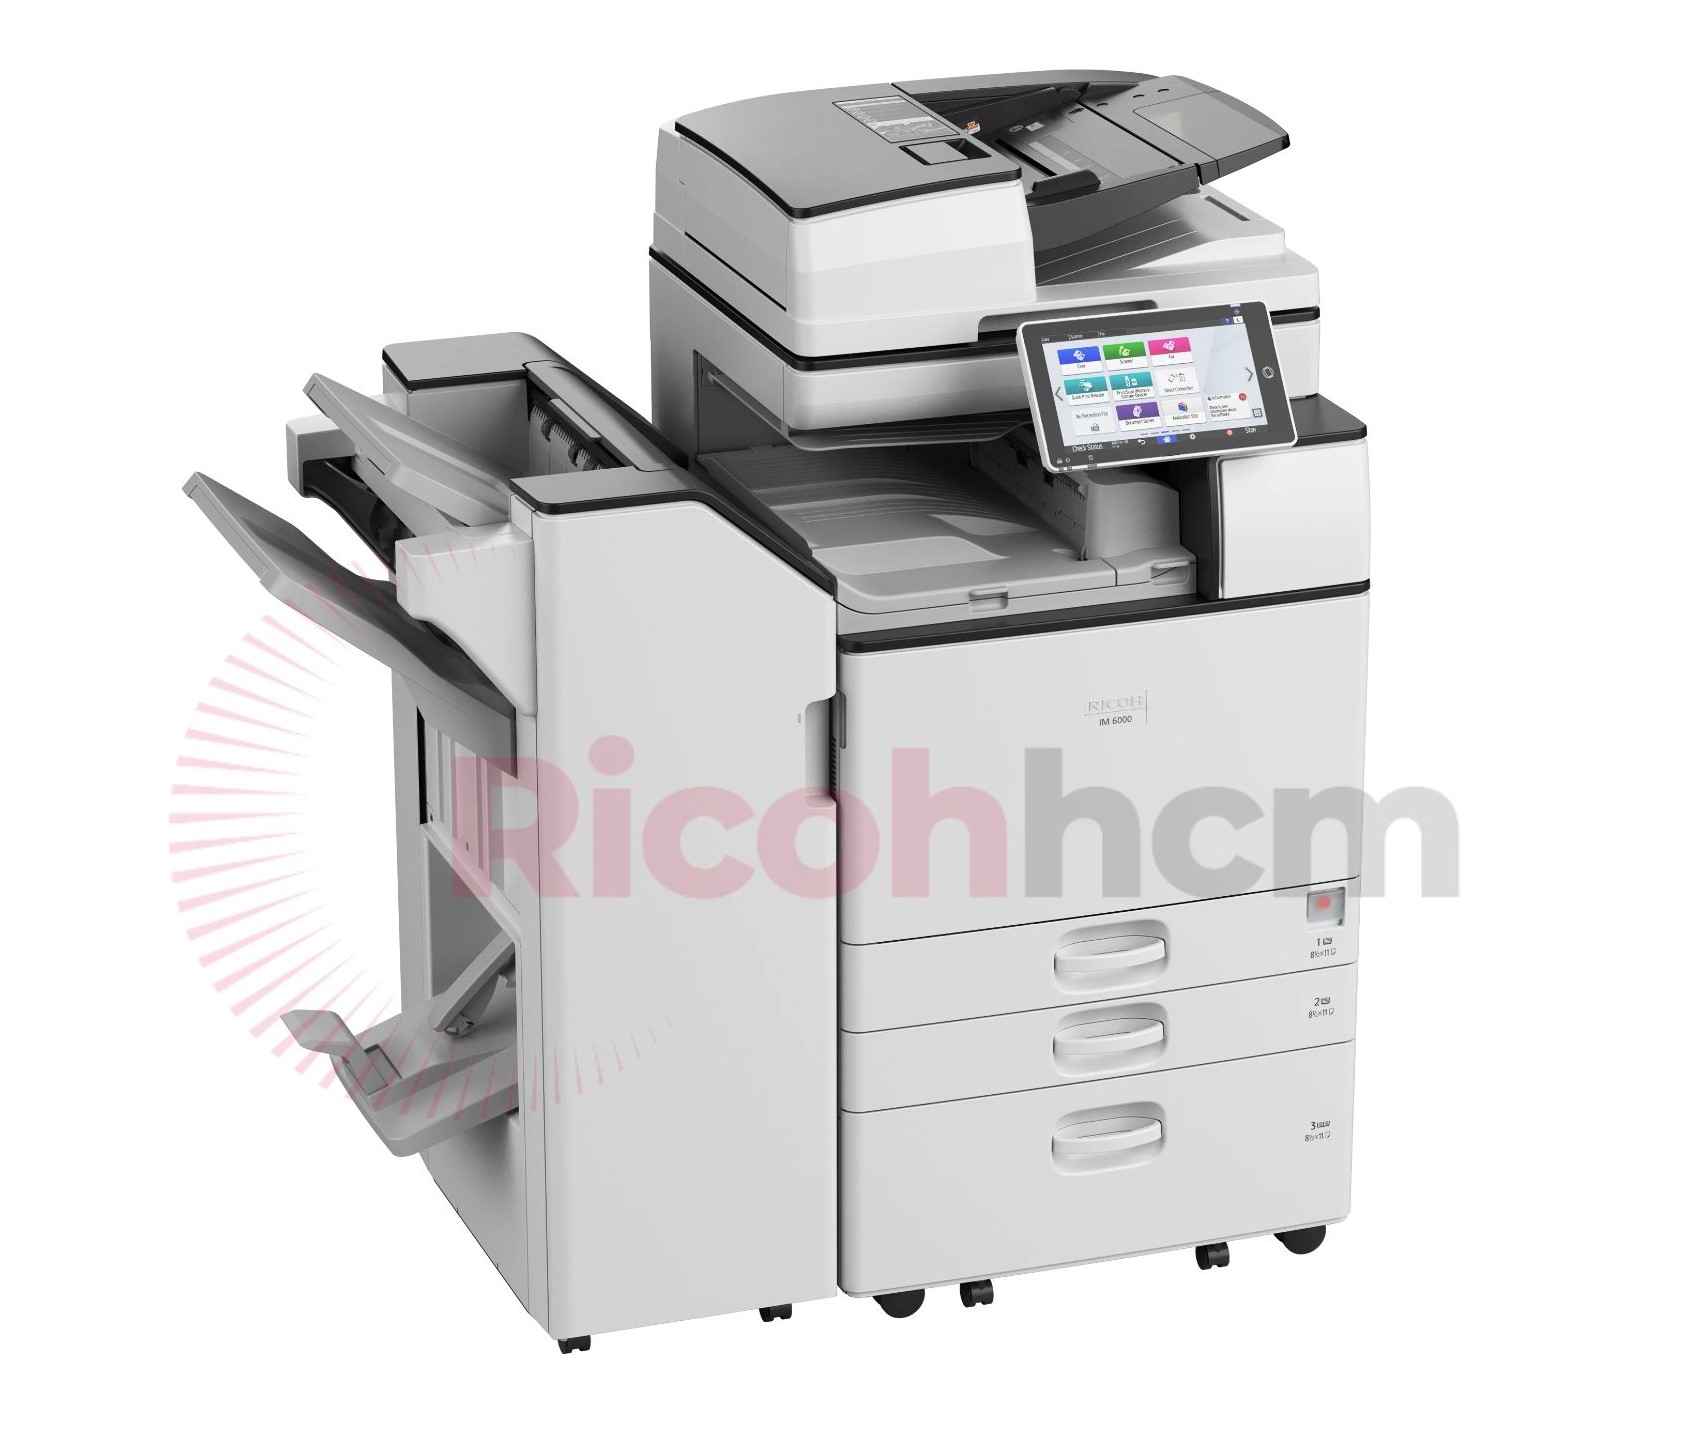 Máy photocopy hiện nay có nhiều ưu điểm tuyệt vời, đó là tốc độ sao chép, in ấn cực kỳ nhanh với chế độ tiết kiệm mực và in dưới độ phân giải cao cực kỳ sắc nét, chất lượng. Đối với các bạn làm việc văn phòng thì chiếc máy photocopy chính là người bạn đồng hành tuyệt vời.